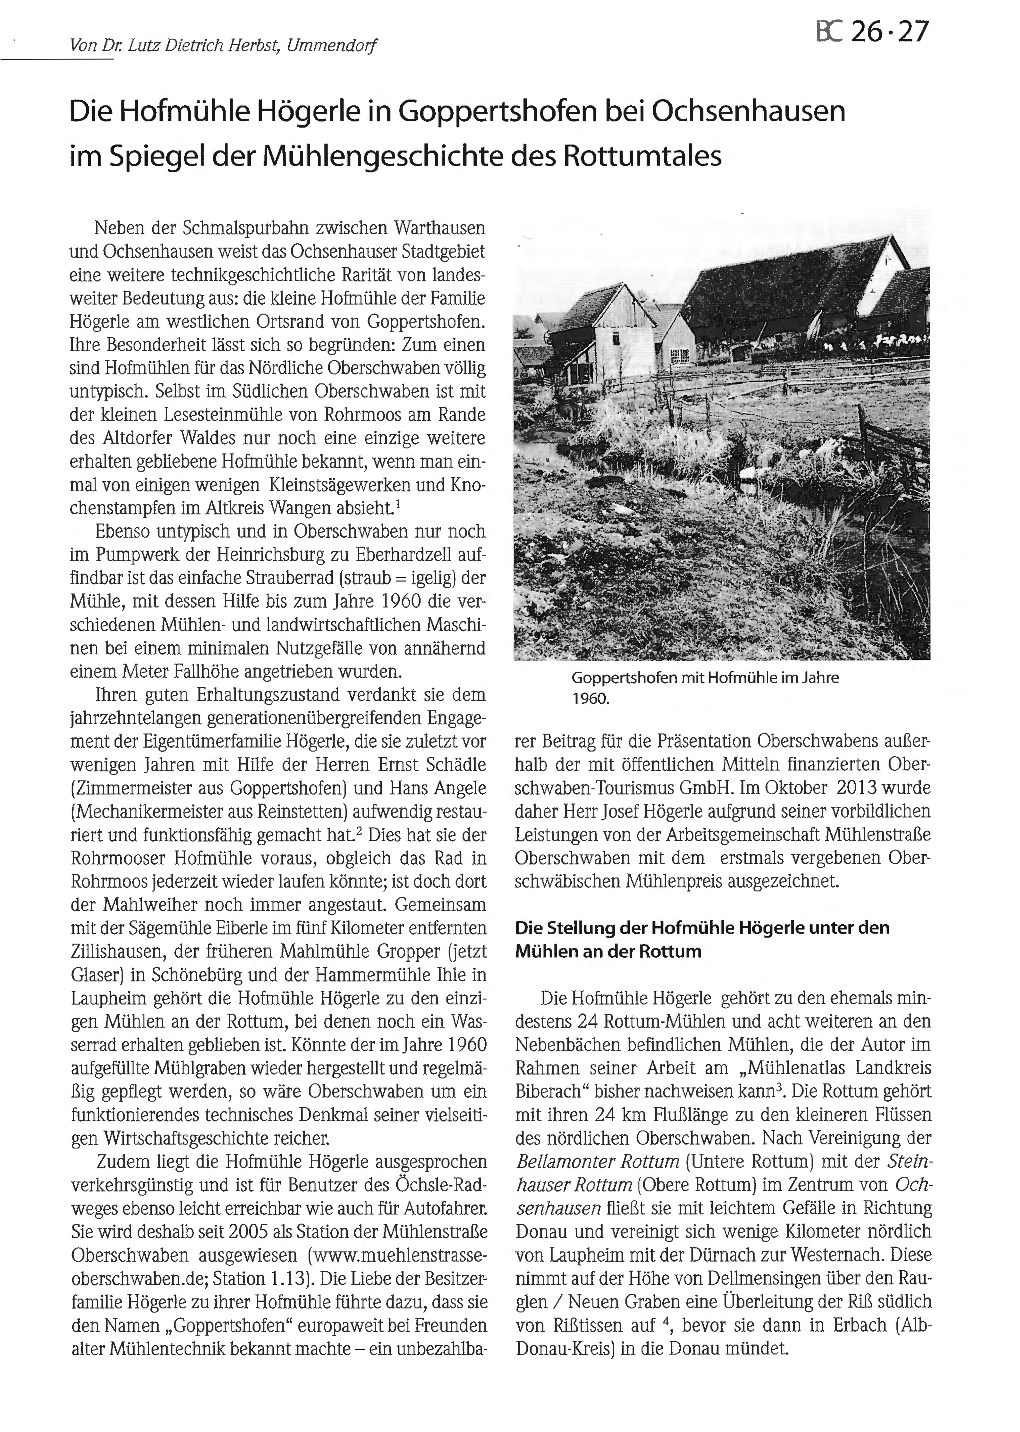 Die Hofmühle Högerle in Goppertshofen Bei Ochsenhausen Im Spiegel Der Mühlengeschichte Des Rotturntales